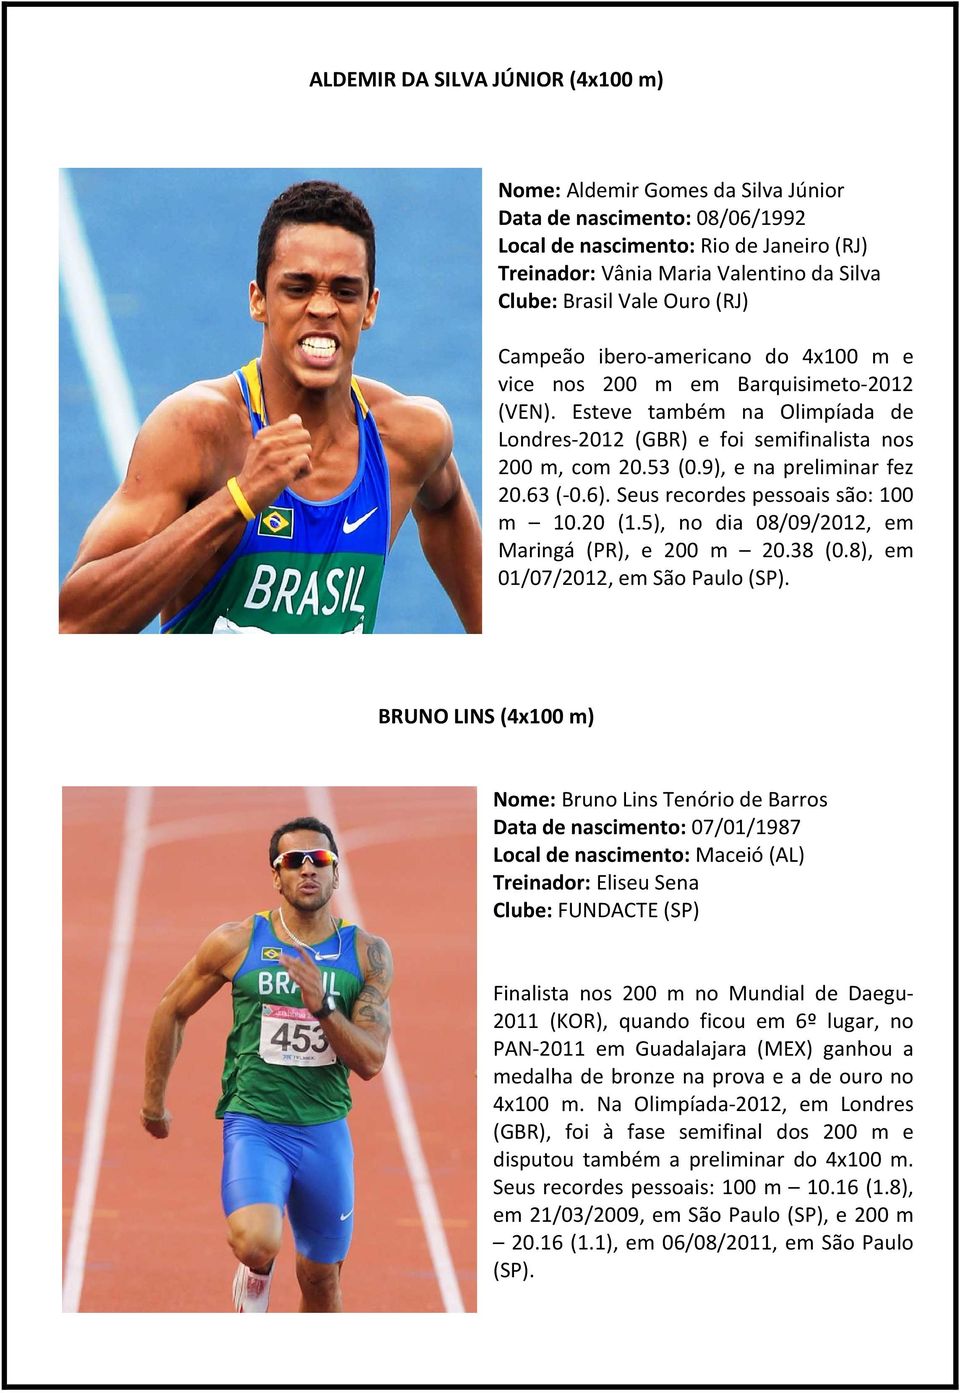 9), e na preliminar fez 20.63 (-0.6). Seus recordes pessoais são: 100 m 10.20 (1.5), no dia 08/09/2012, em Maringá (PR), e 200 m 20.38 (0.8), em 01/07/2012, em São Paulo (SP).